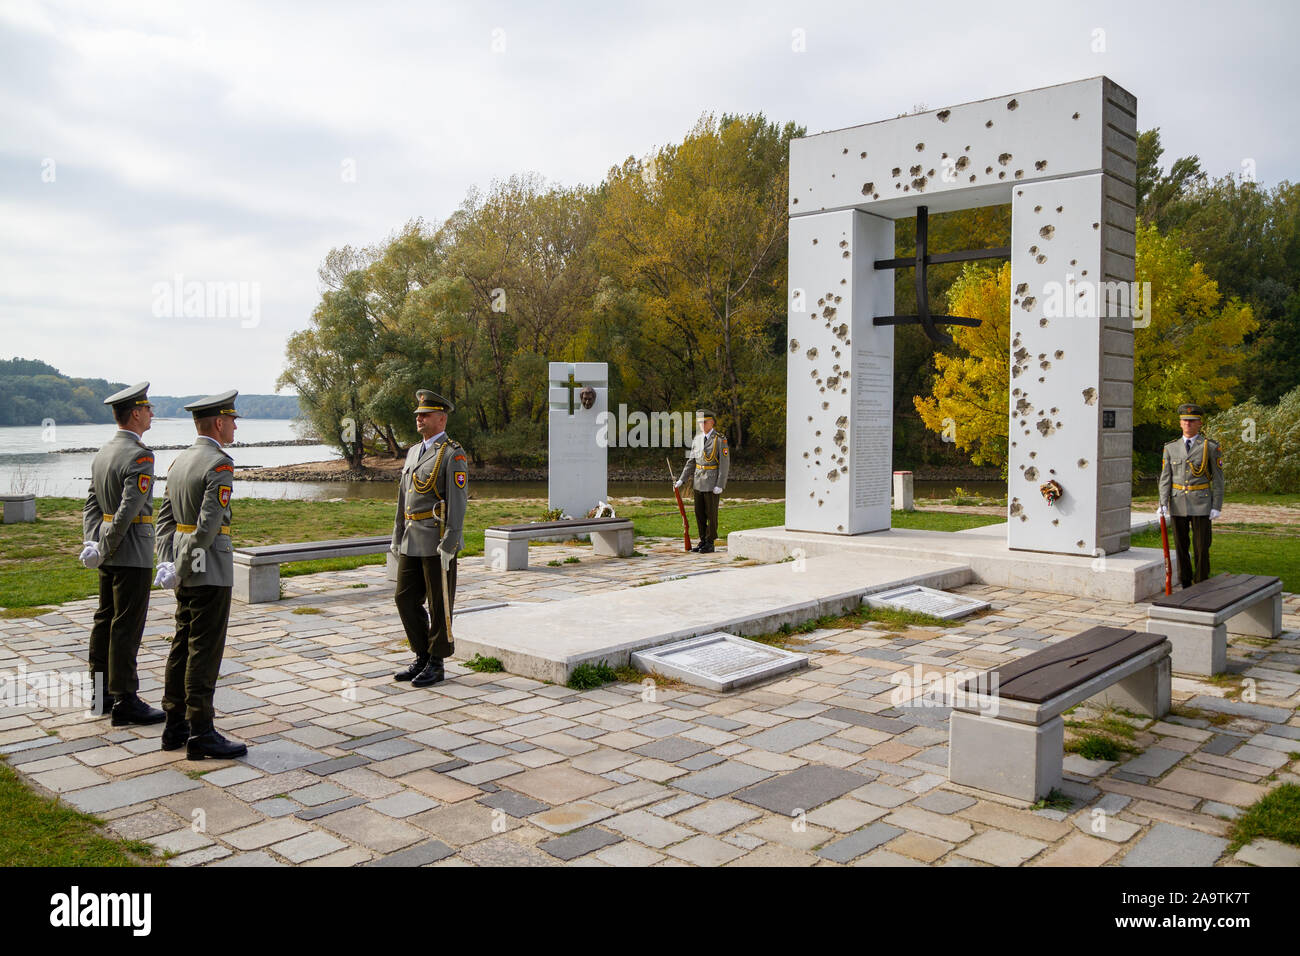 La guardia slovacca di onore al monumento "Brana Slobody' (gate di libertà) commemorazione di coloro che sono stati uccisi sul confine cercando di sfuggire. Foto Stock